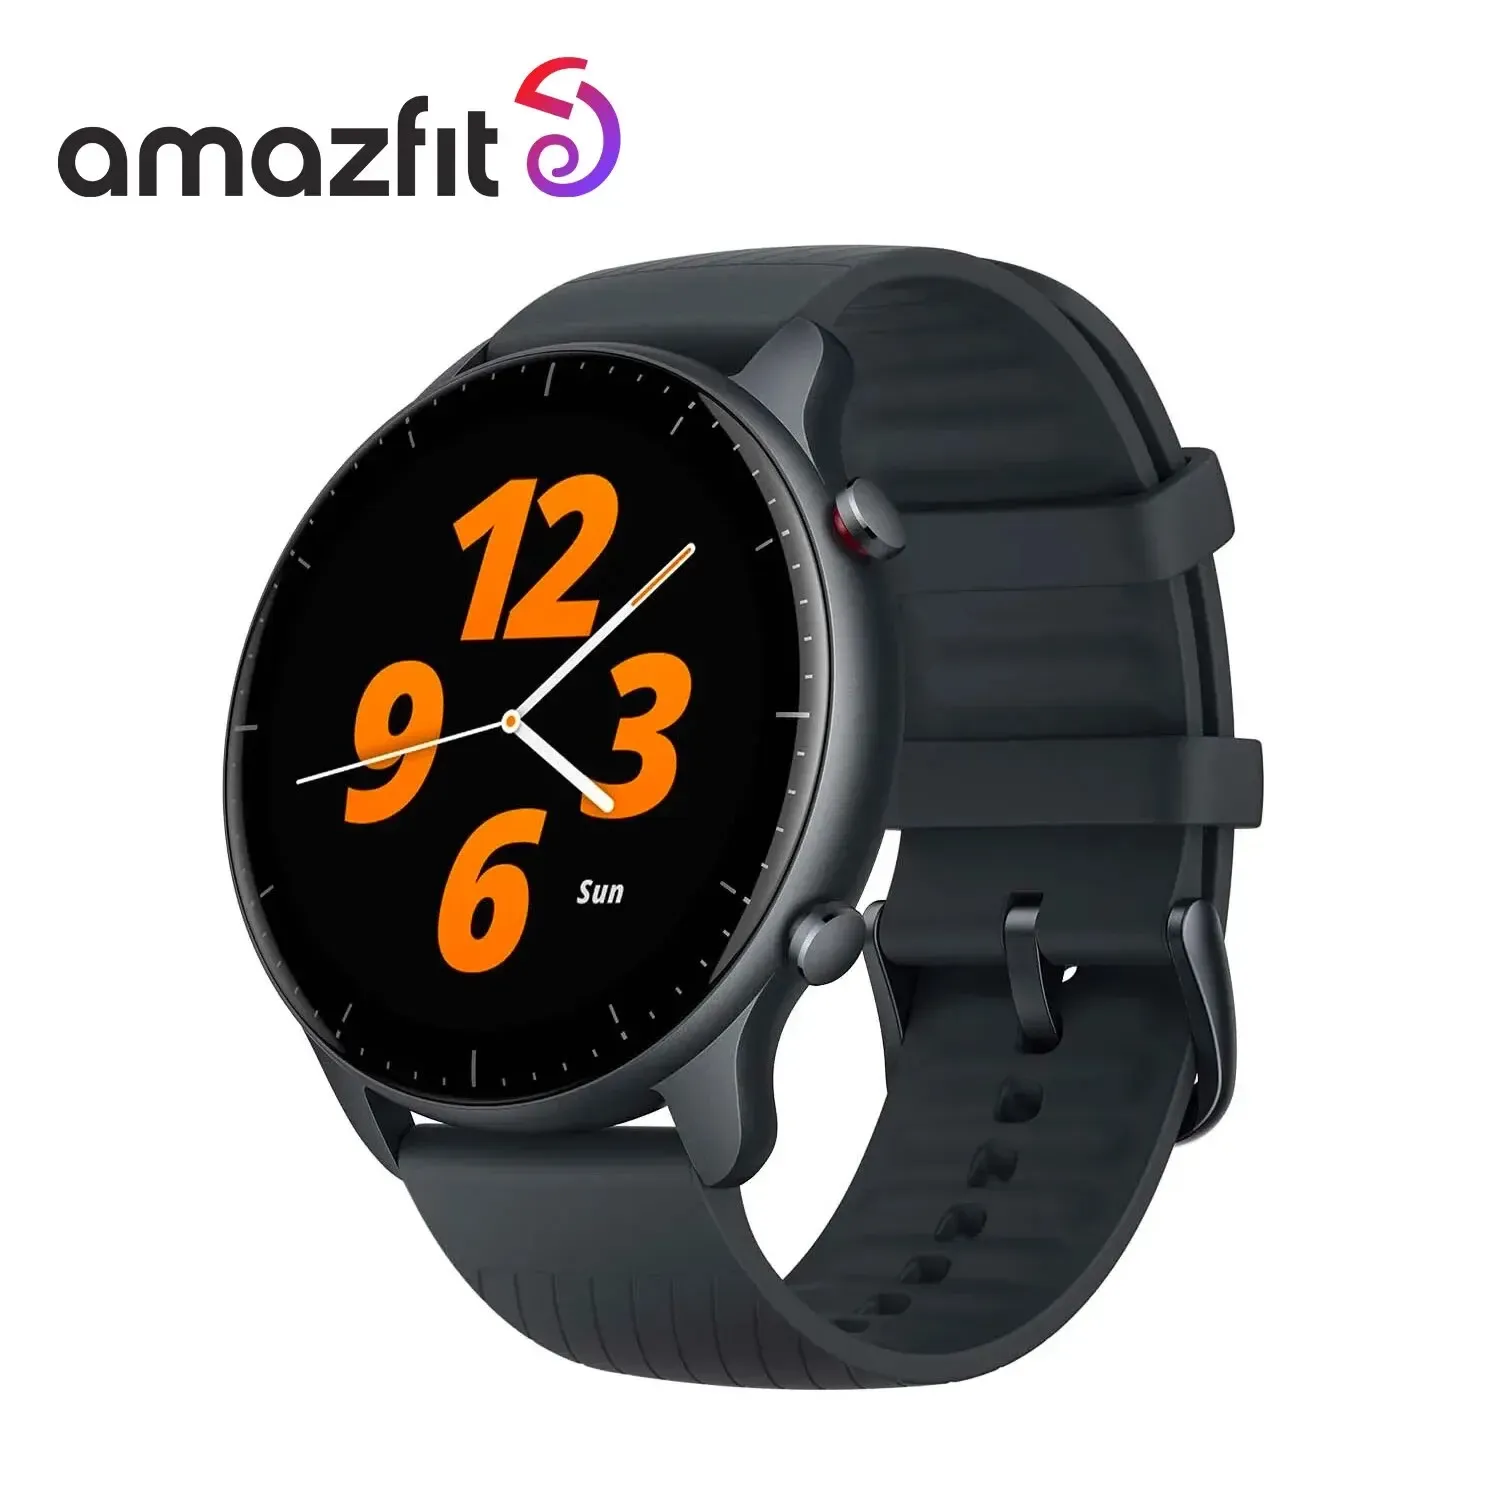 [Taxa Inclusa/Moedas] Smartwatch Amazfit Gtr 2 Com Gps E Alexa Integrados (Nova Verso)